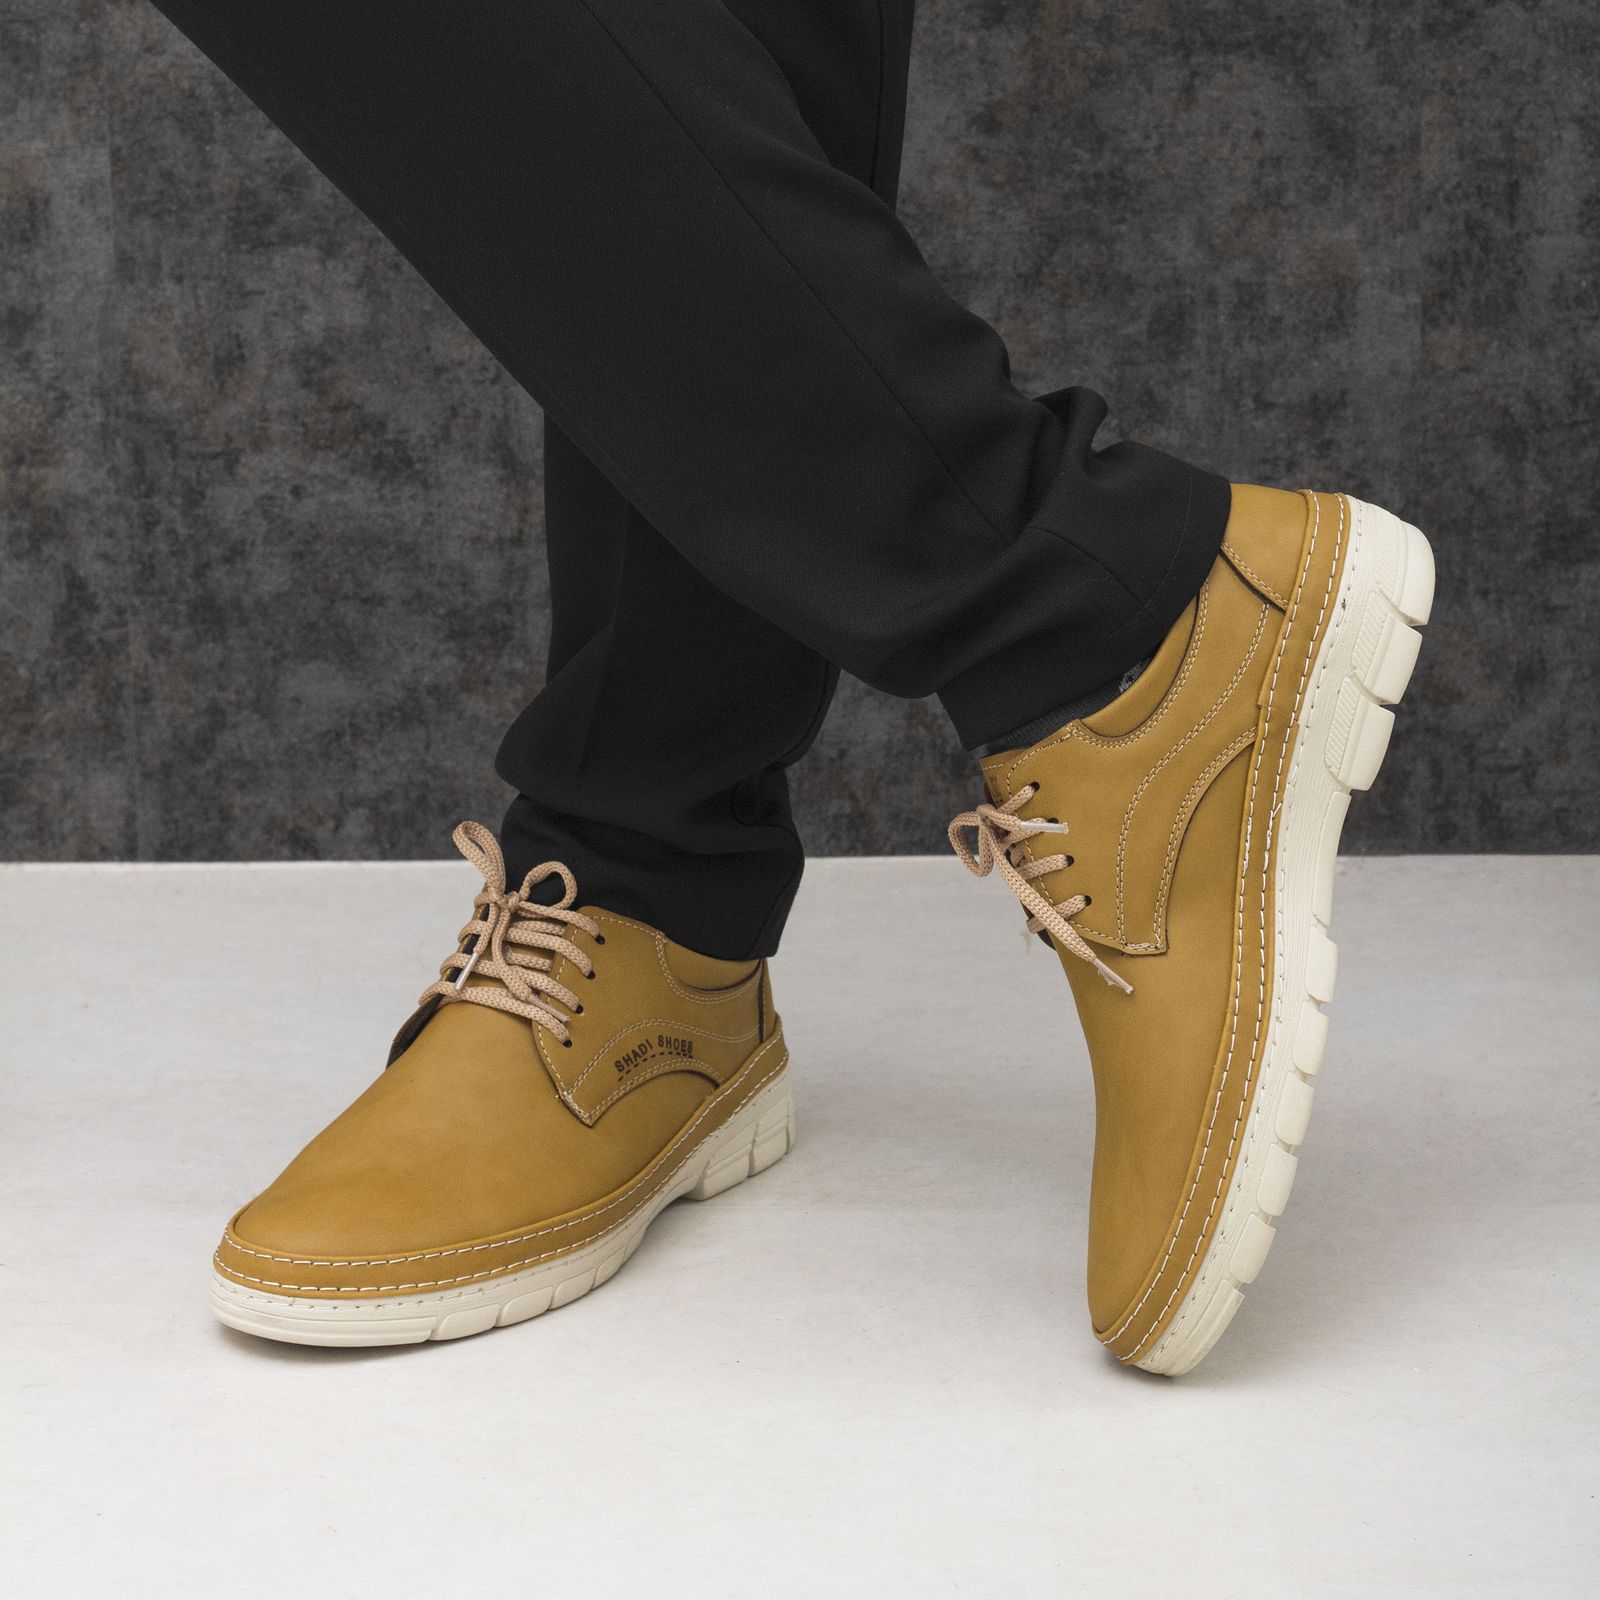 کفش مردانه مدل CLASSIC کد 01 رنگ خردلی -  - 2